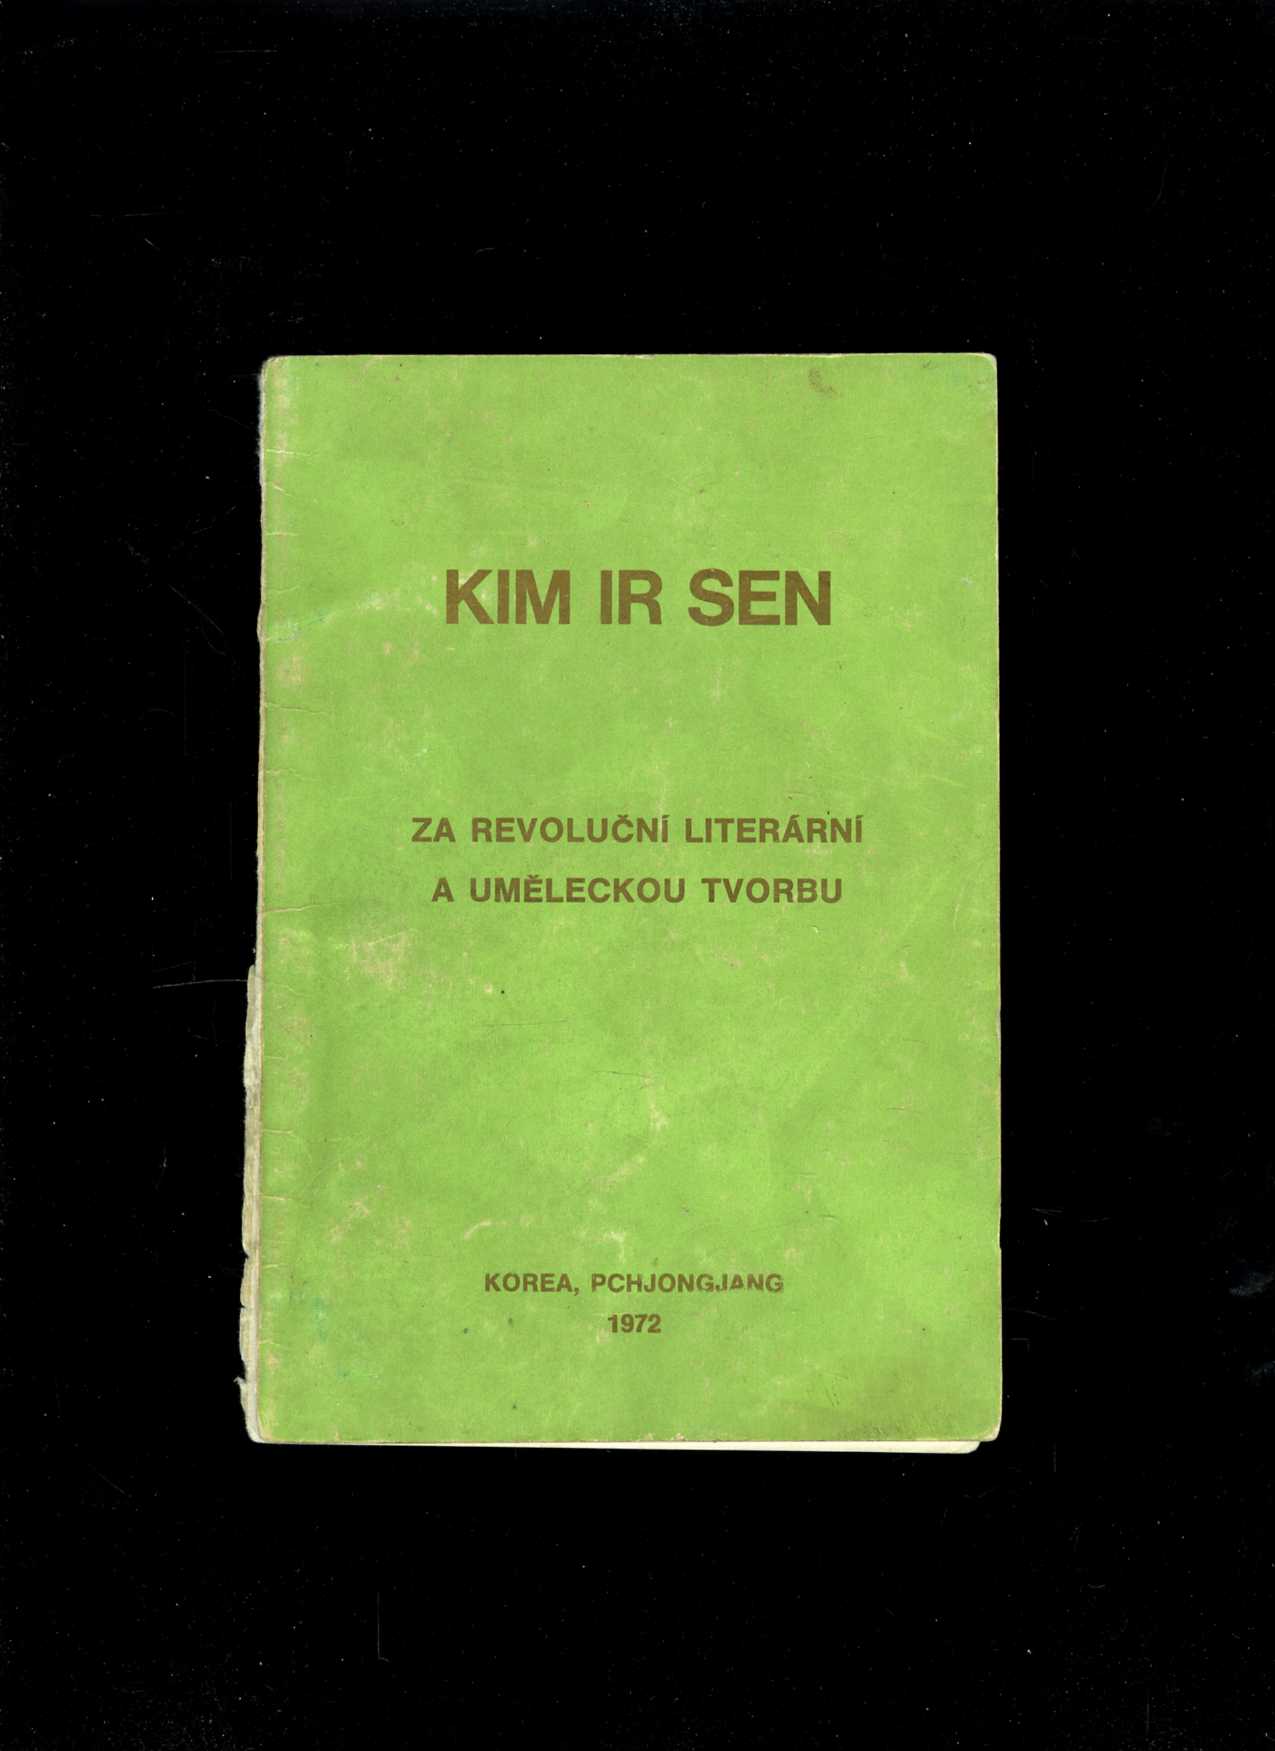 Za revoluční literární a uměleckou tvorbu (Kim Ir Sen)